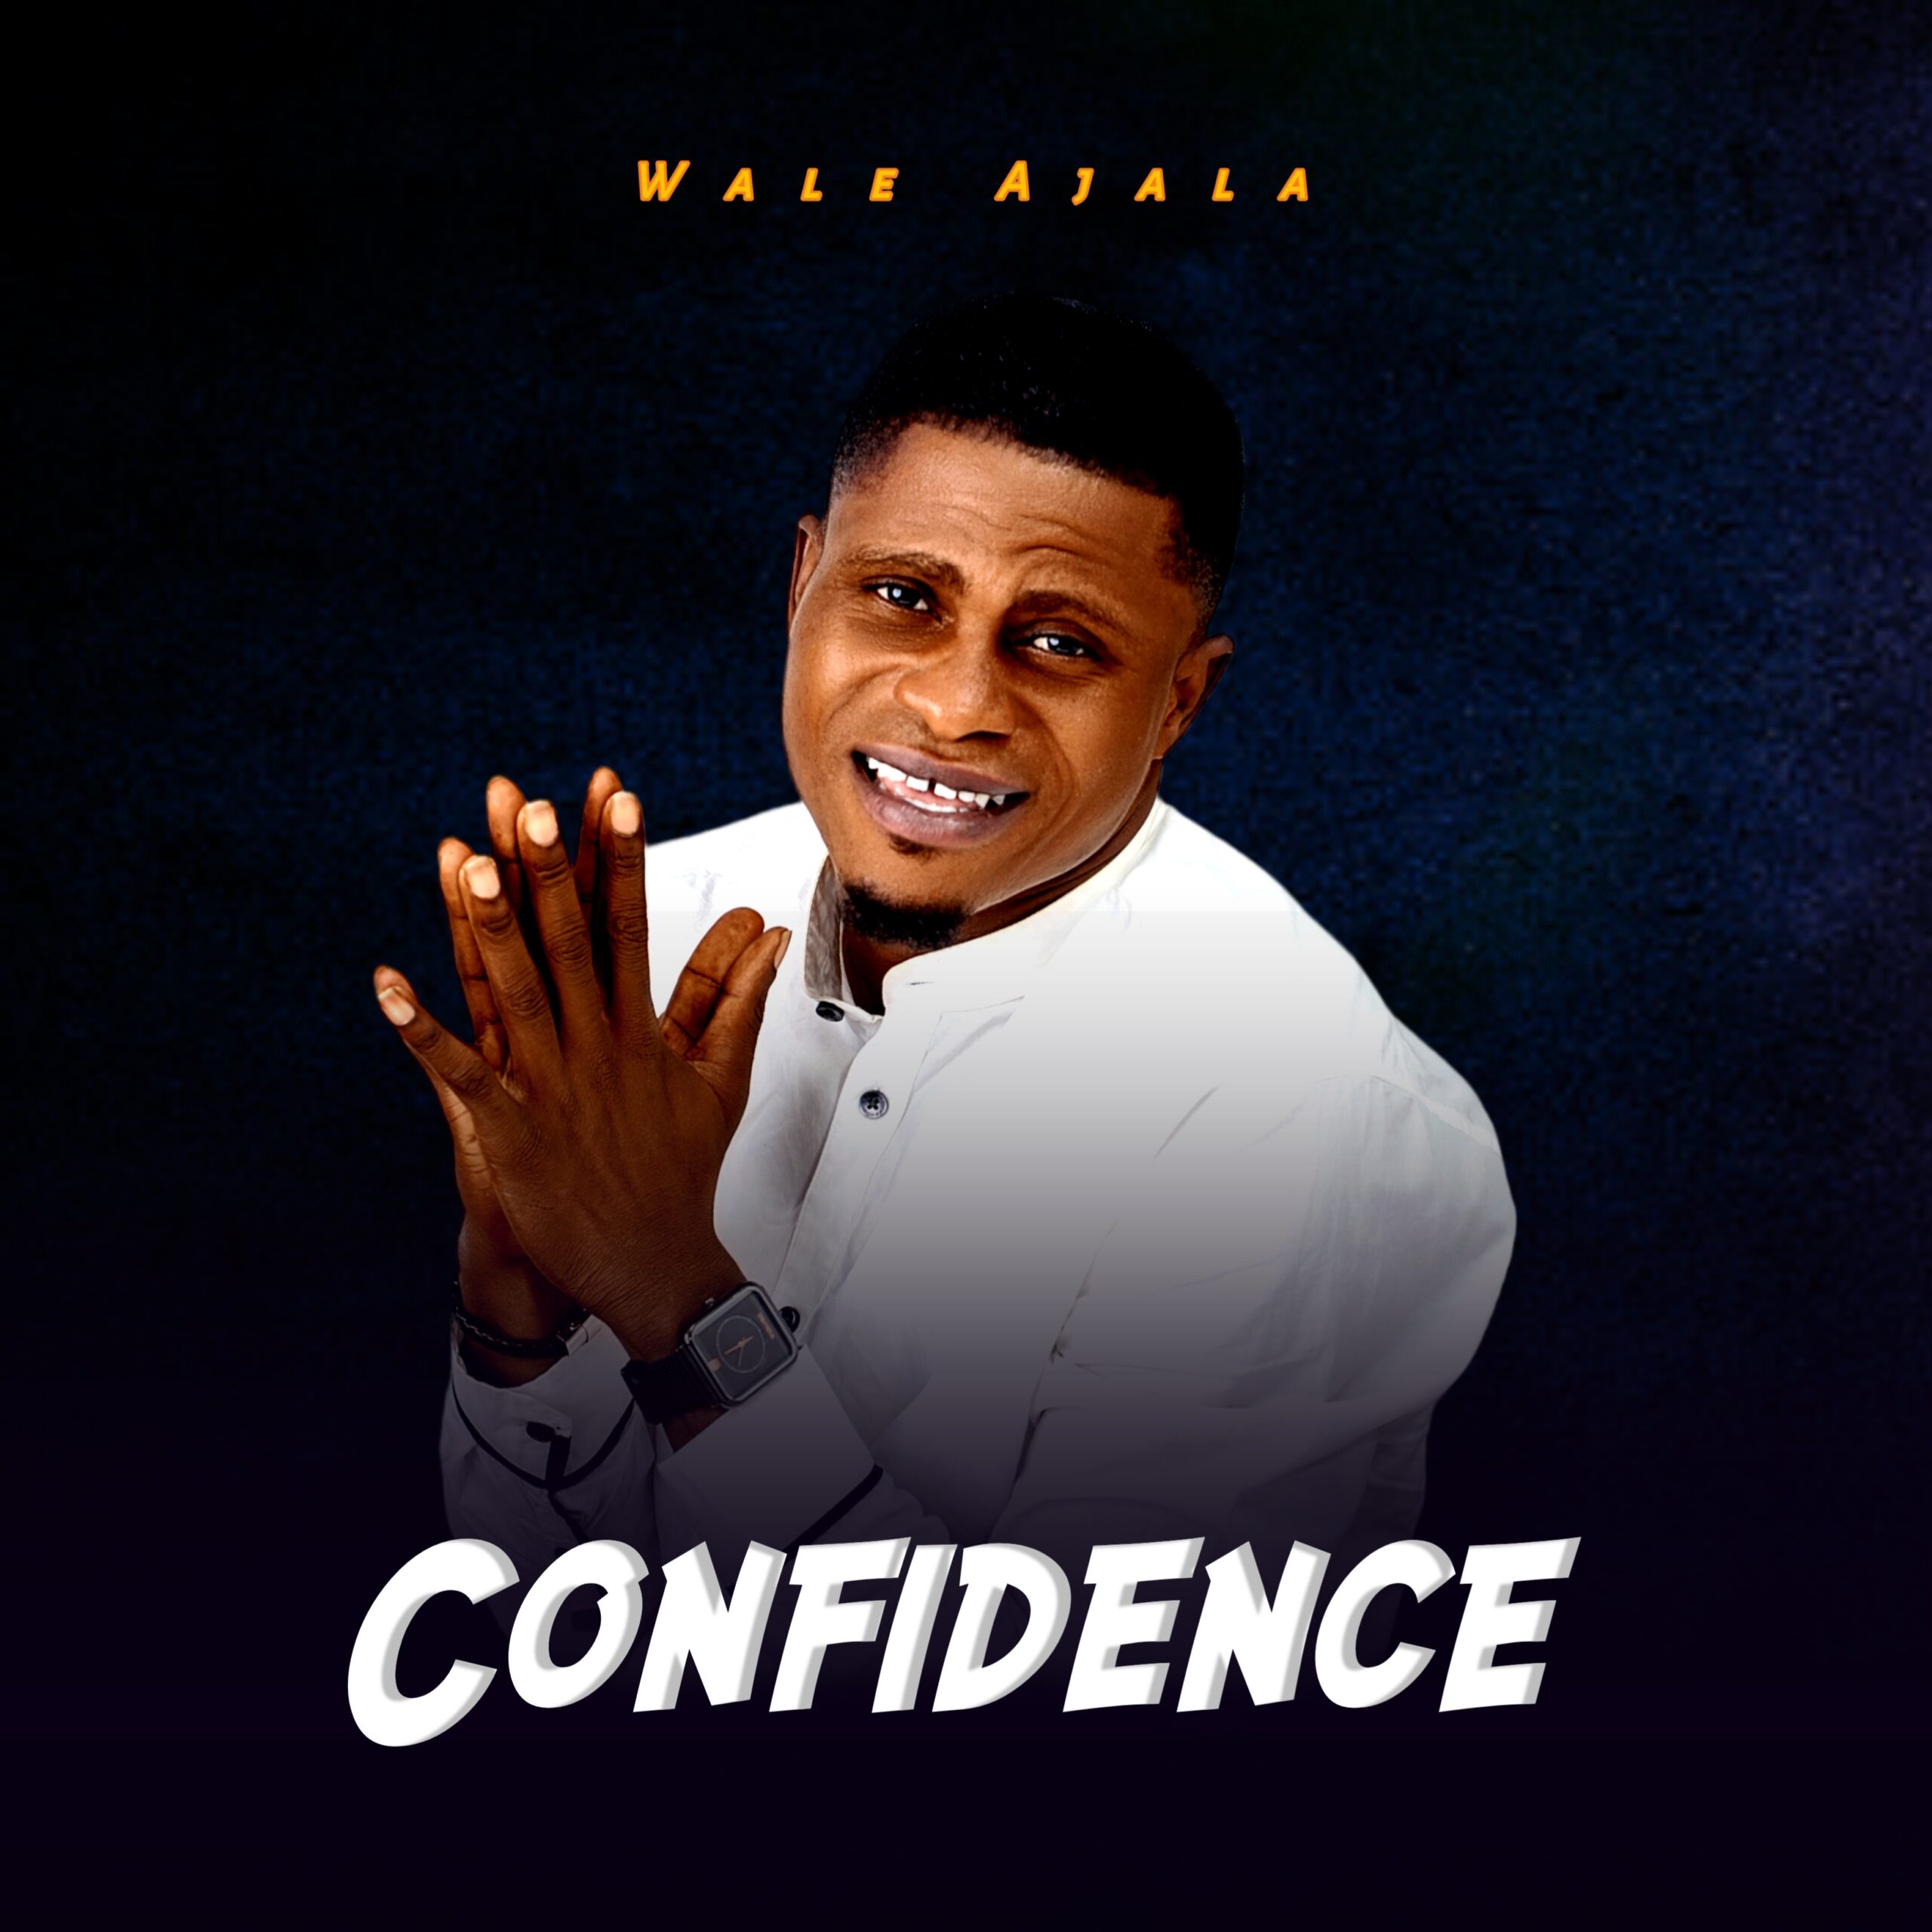 Confidence - Wale Ajala